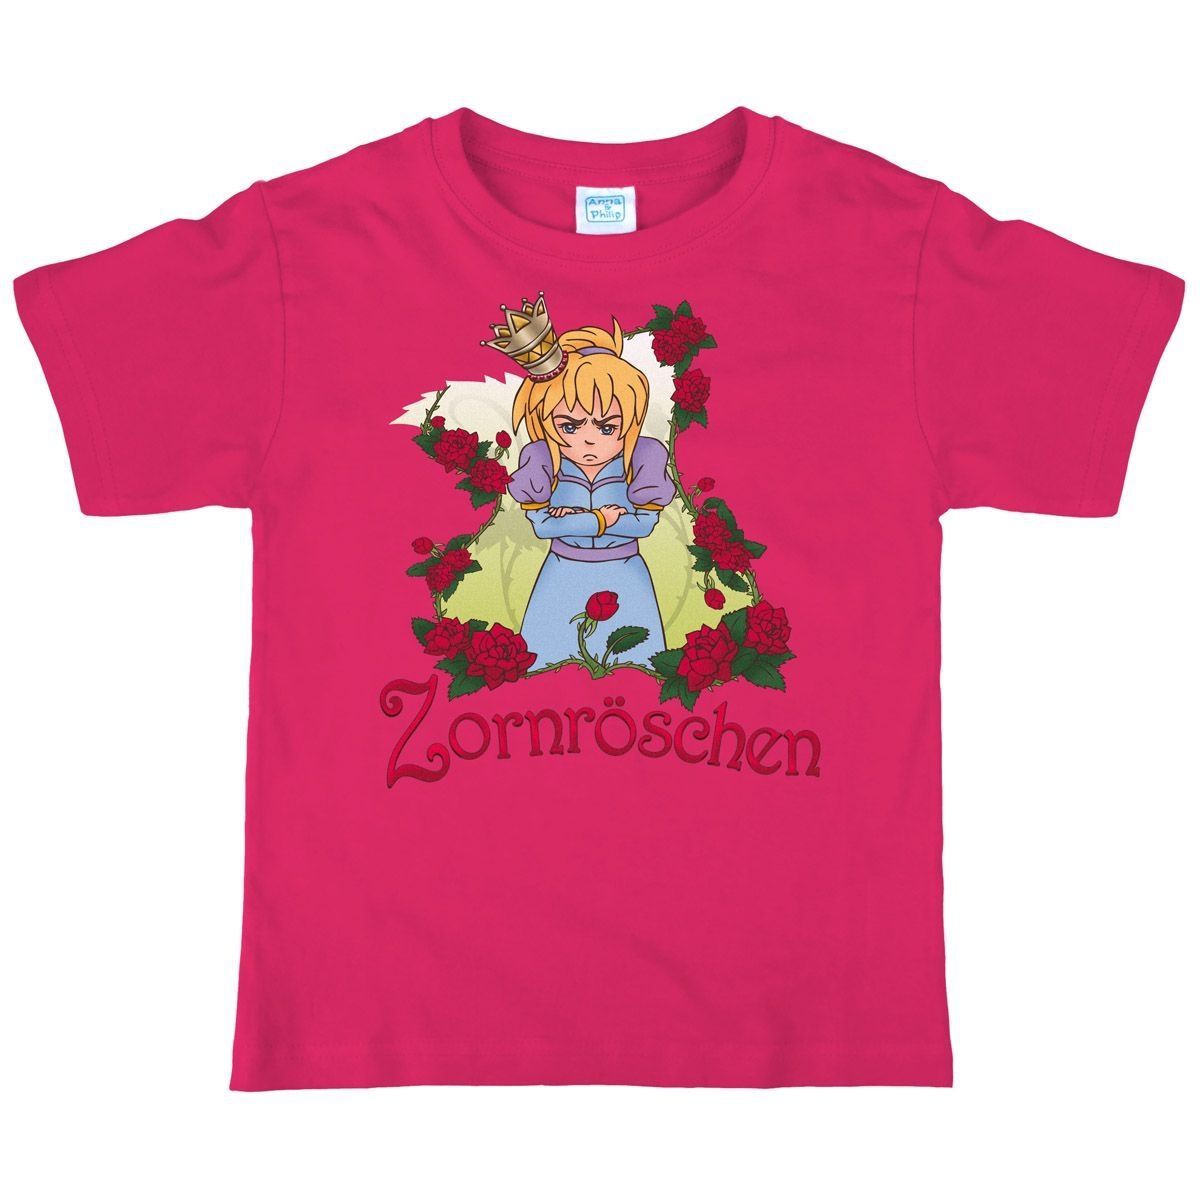 Zornröschen Kinder T-Shirt pink 122 / 128